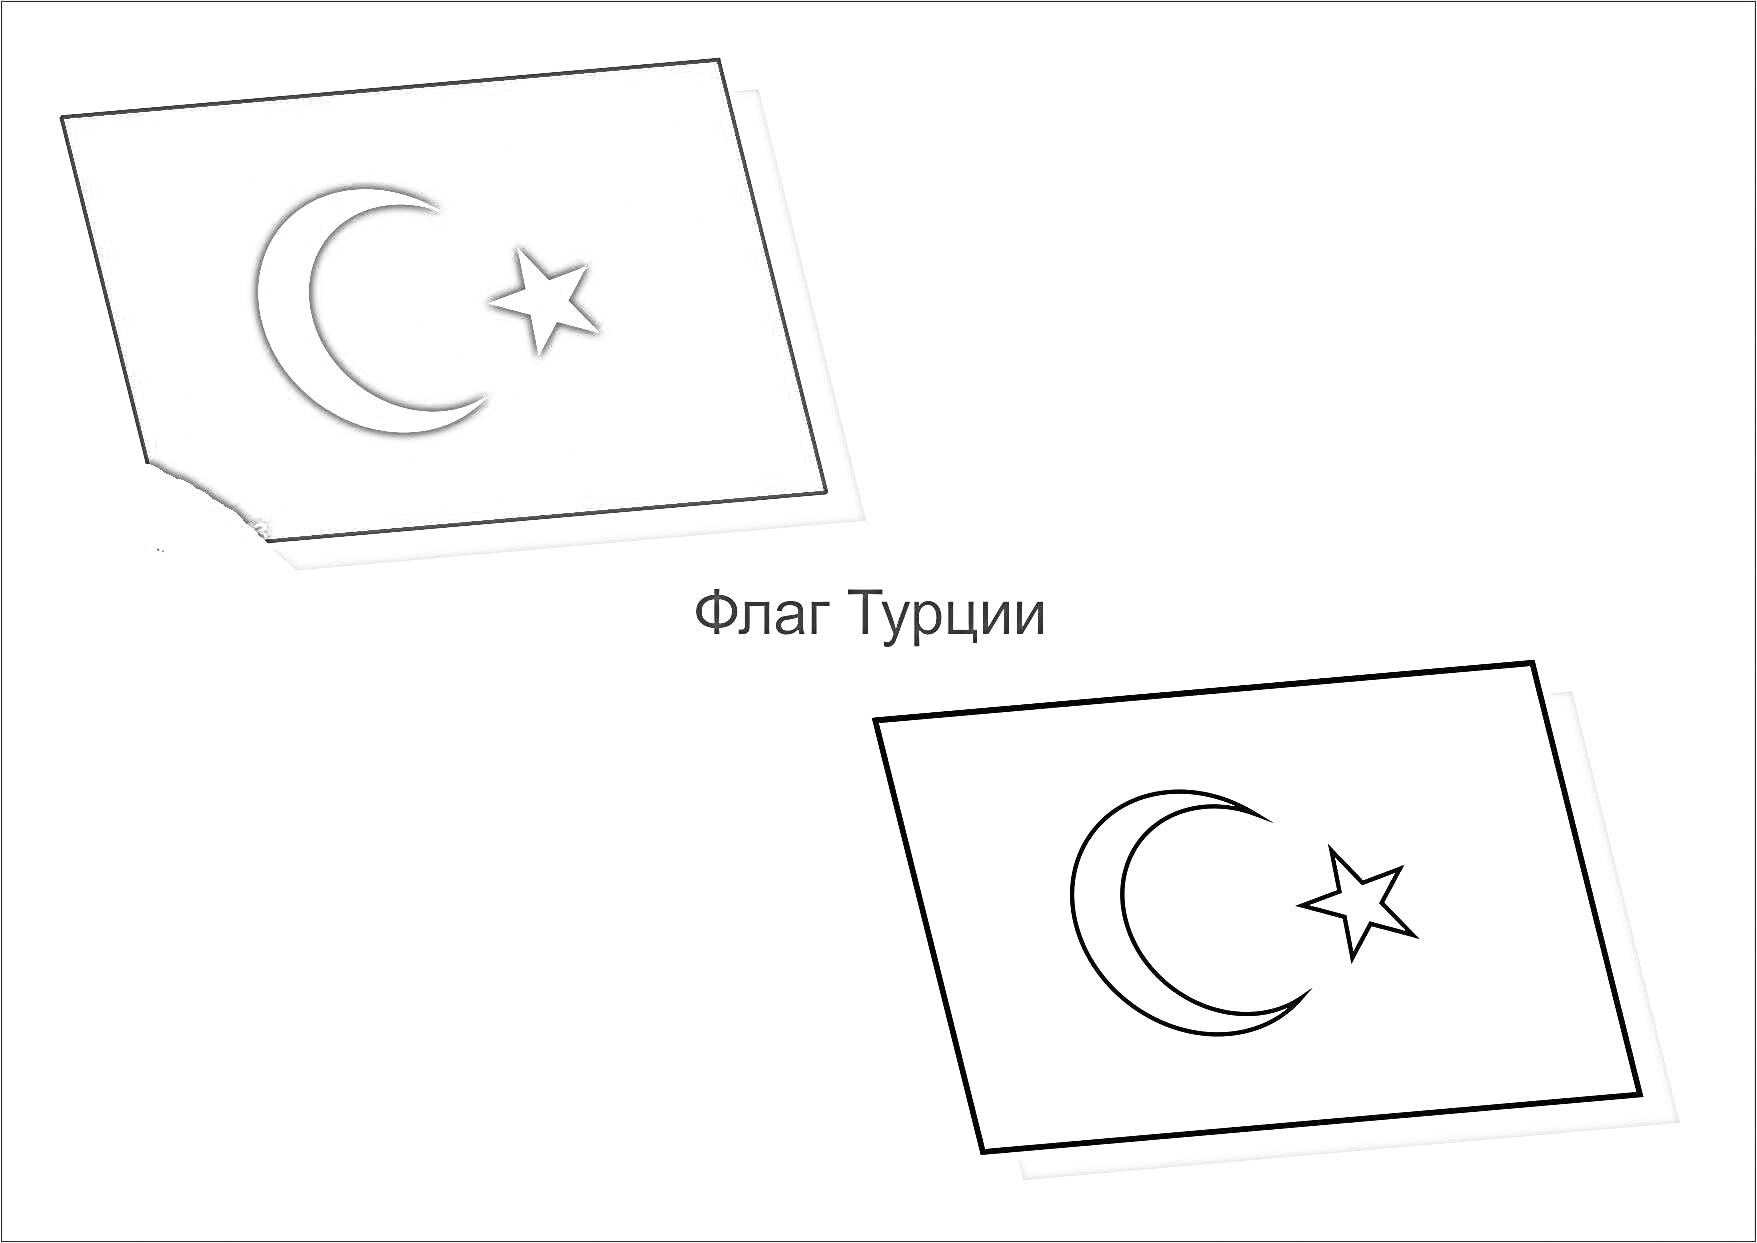 Раскраска Флаг Турции с изображением одного раскрашенного и одного черно-белого флага